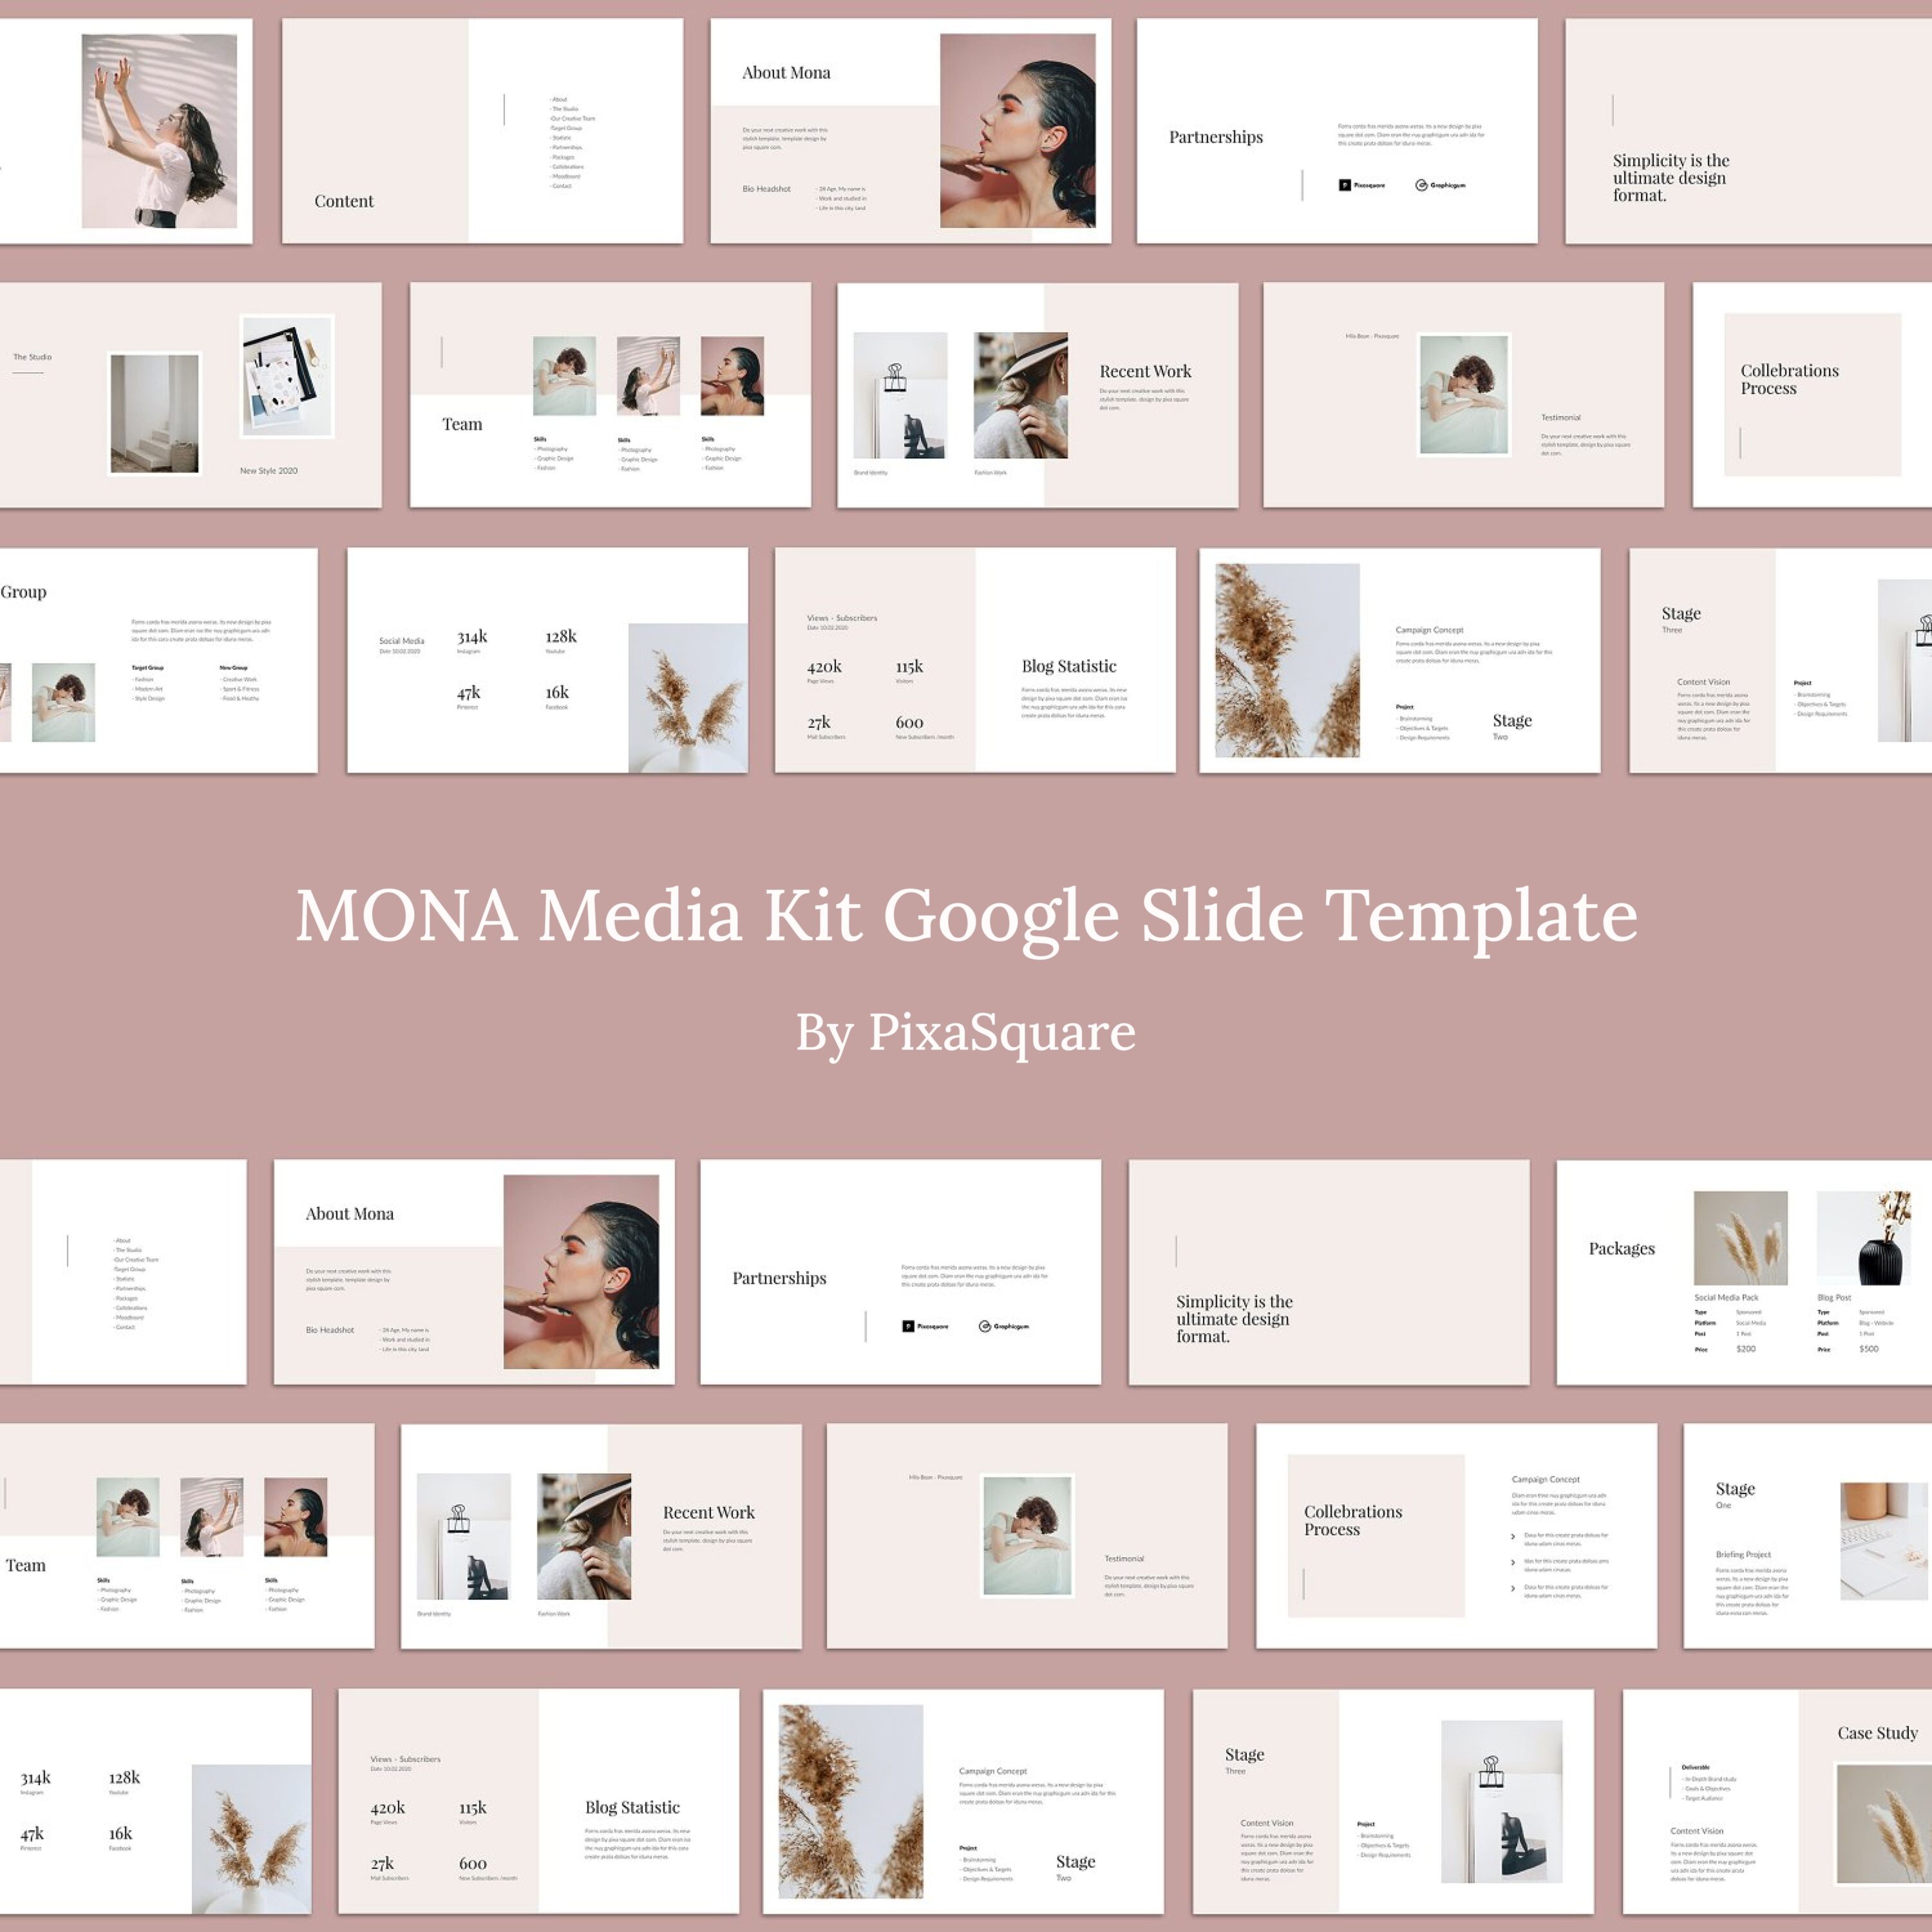 MONA Media Kit Google Slide Template.